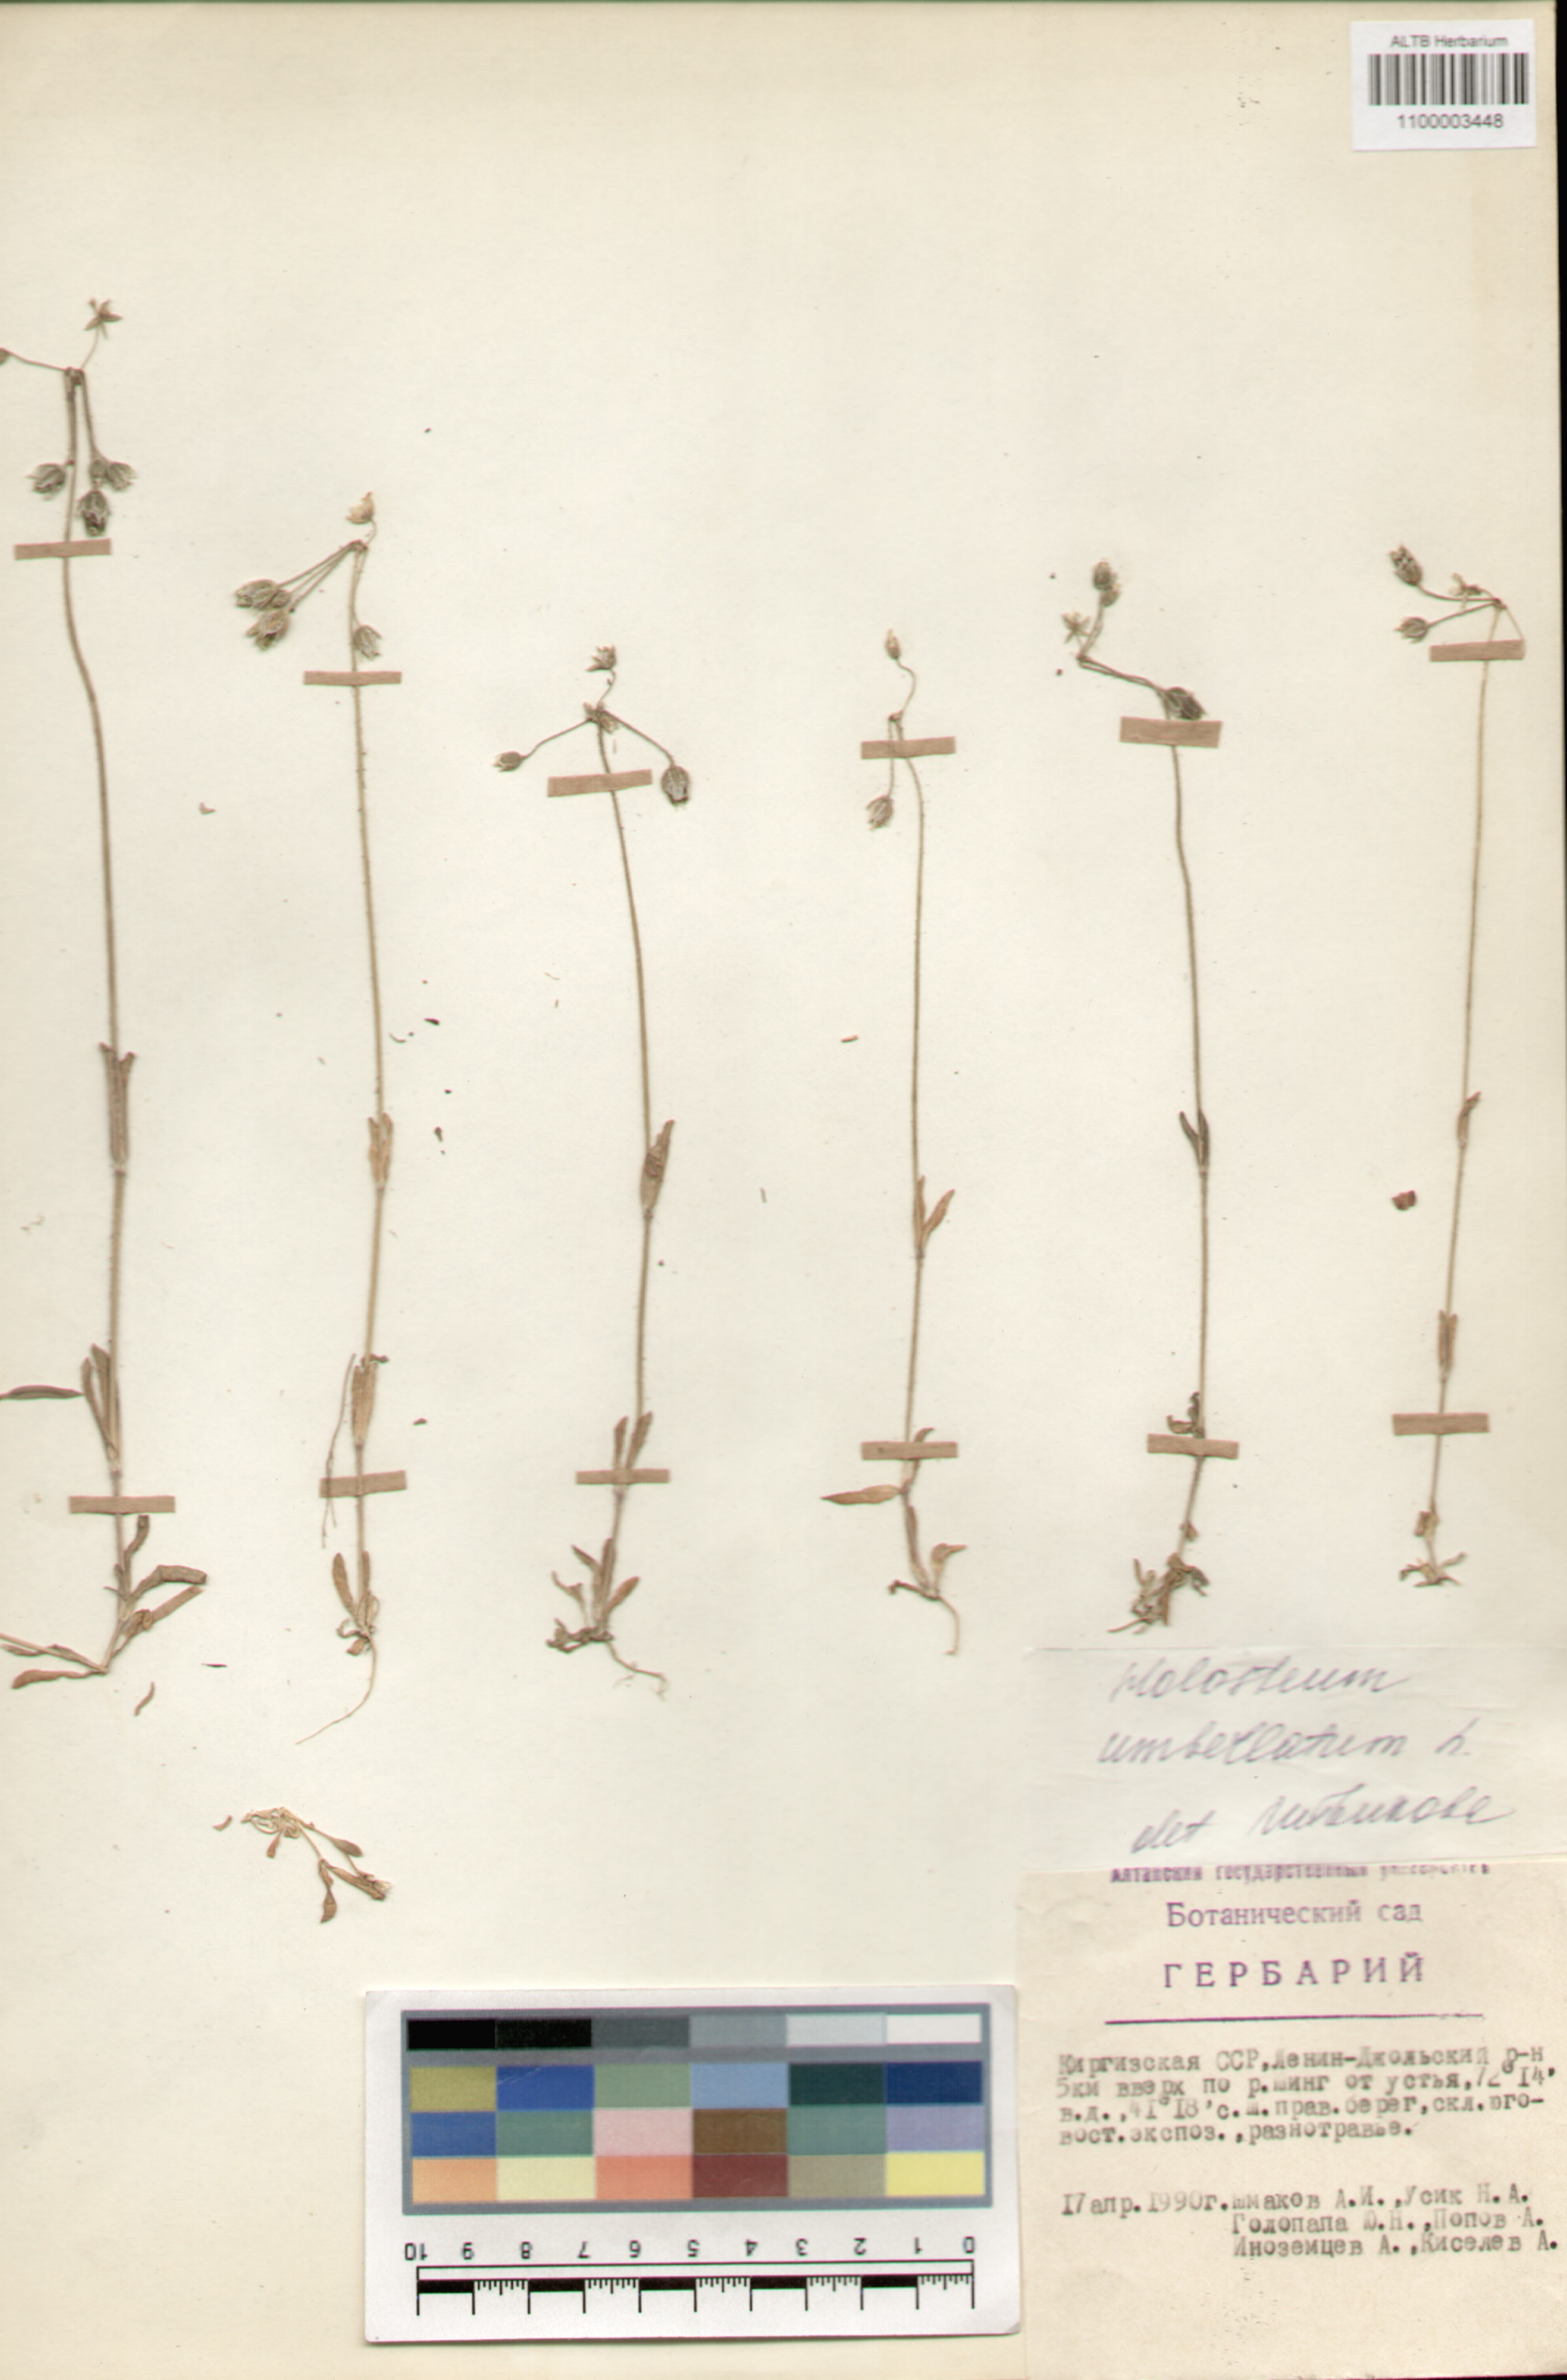 Caryophyllaceae,Holosteum umbellatum L.